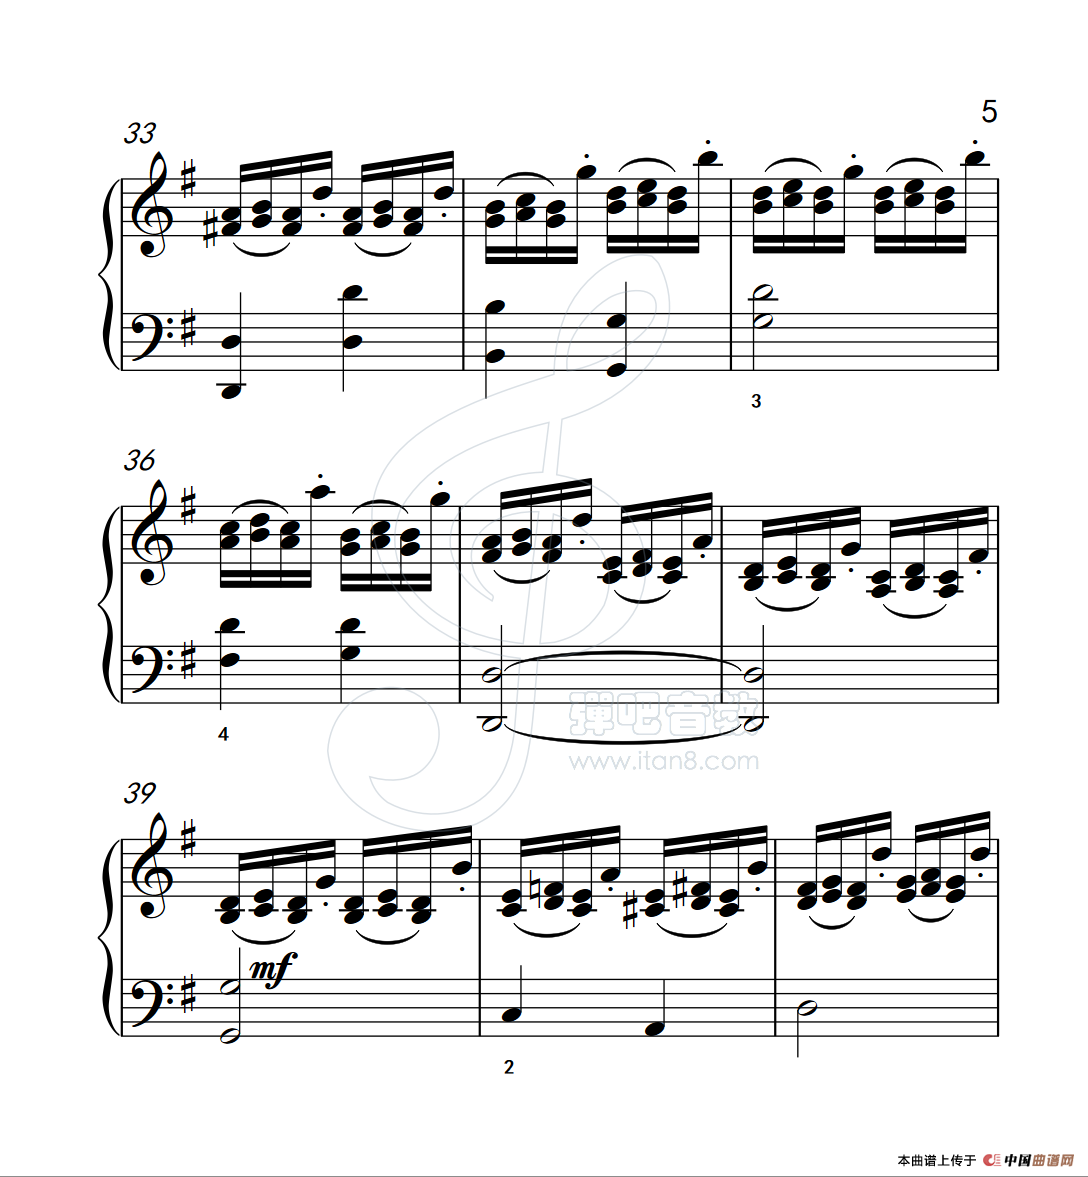 《练习曲 28》钢琴曲谱图分享